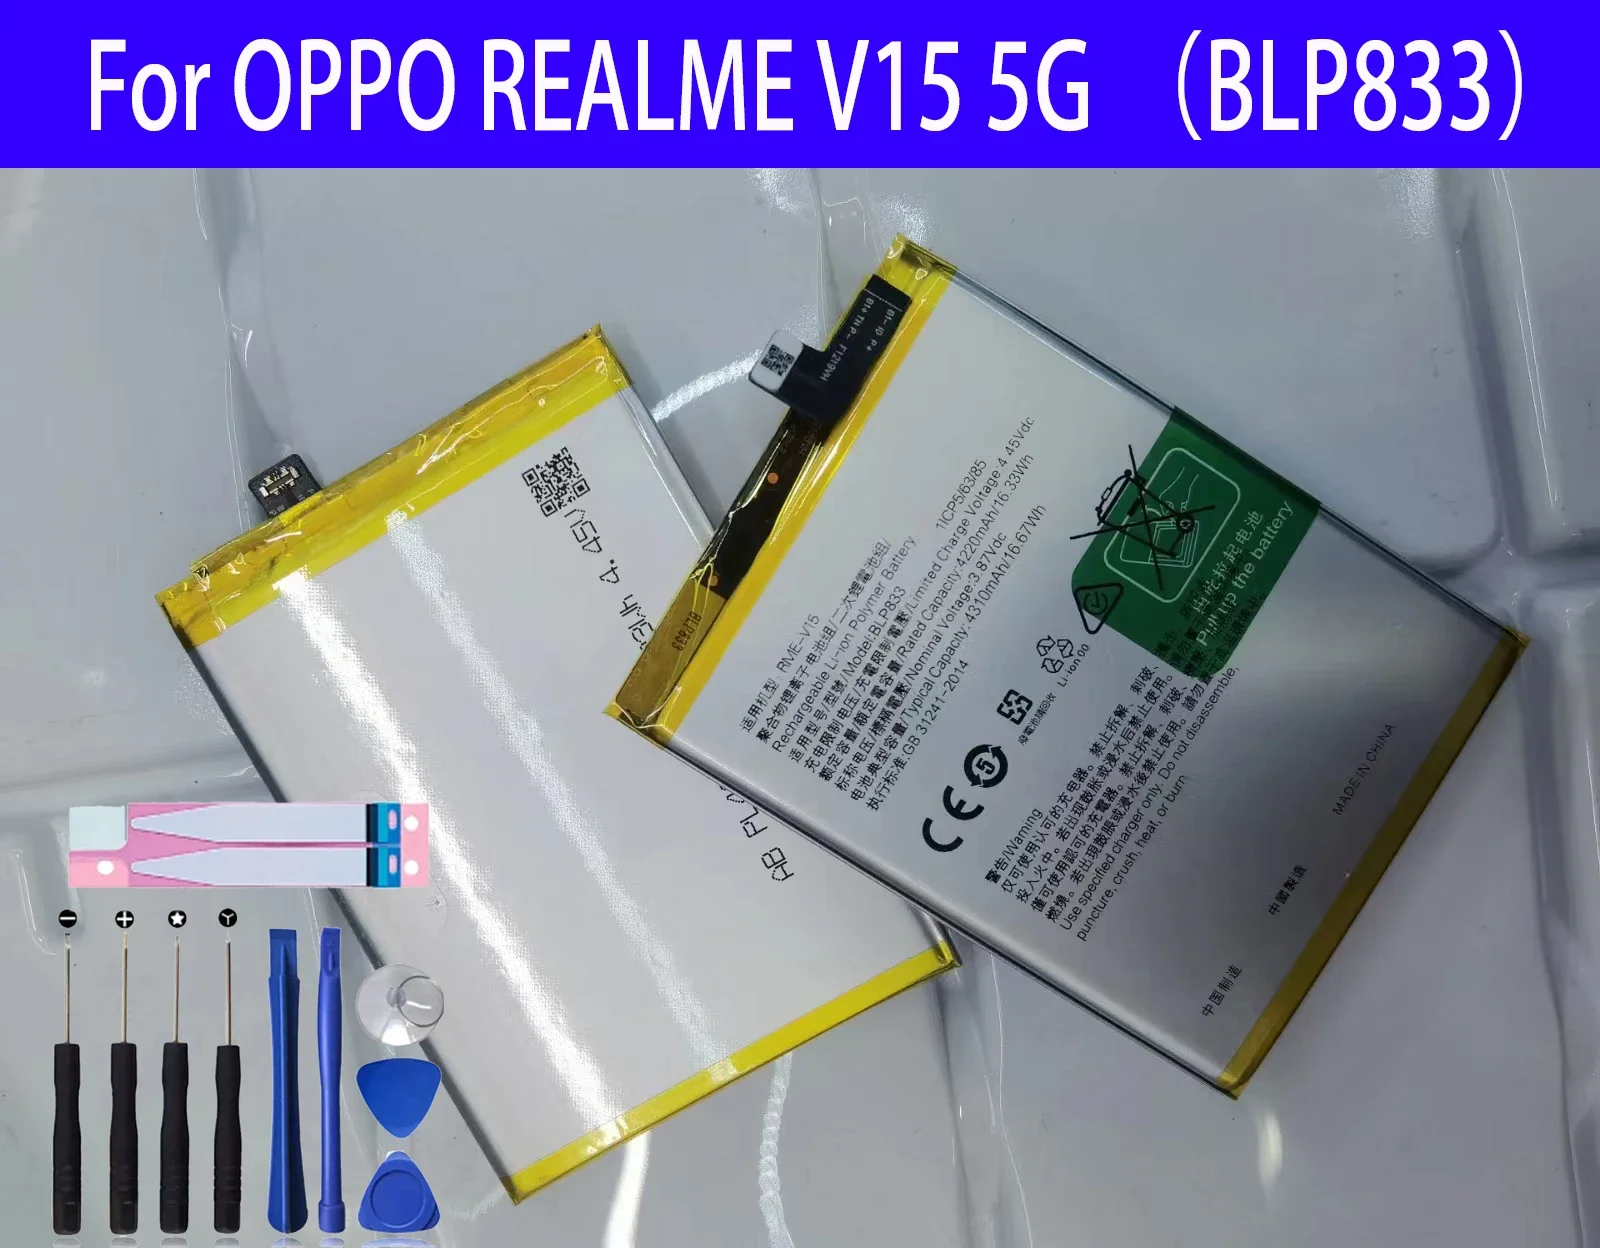 

100% оригинальный новый запасной аккумулятор BLP833 для OPPO REALME V15 5G аккумулятор для телефона + Инструменты